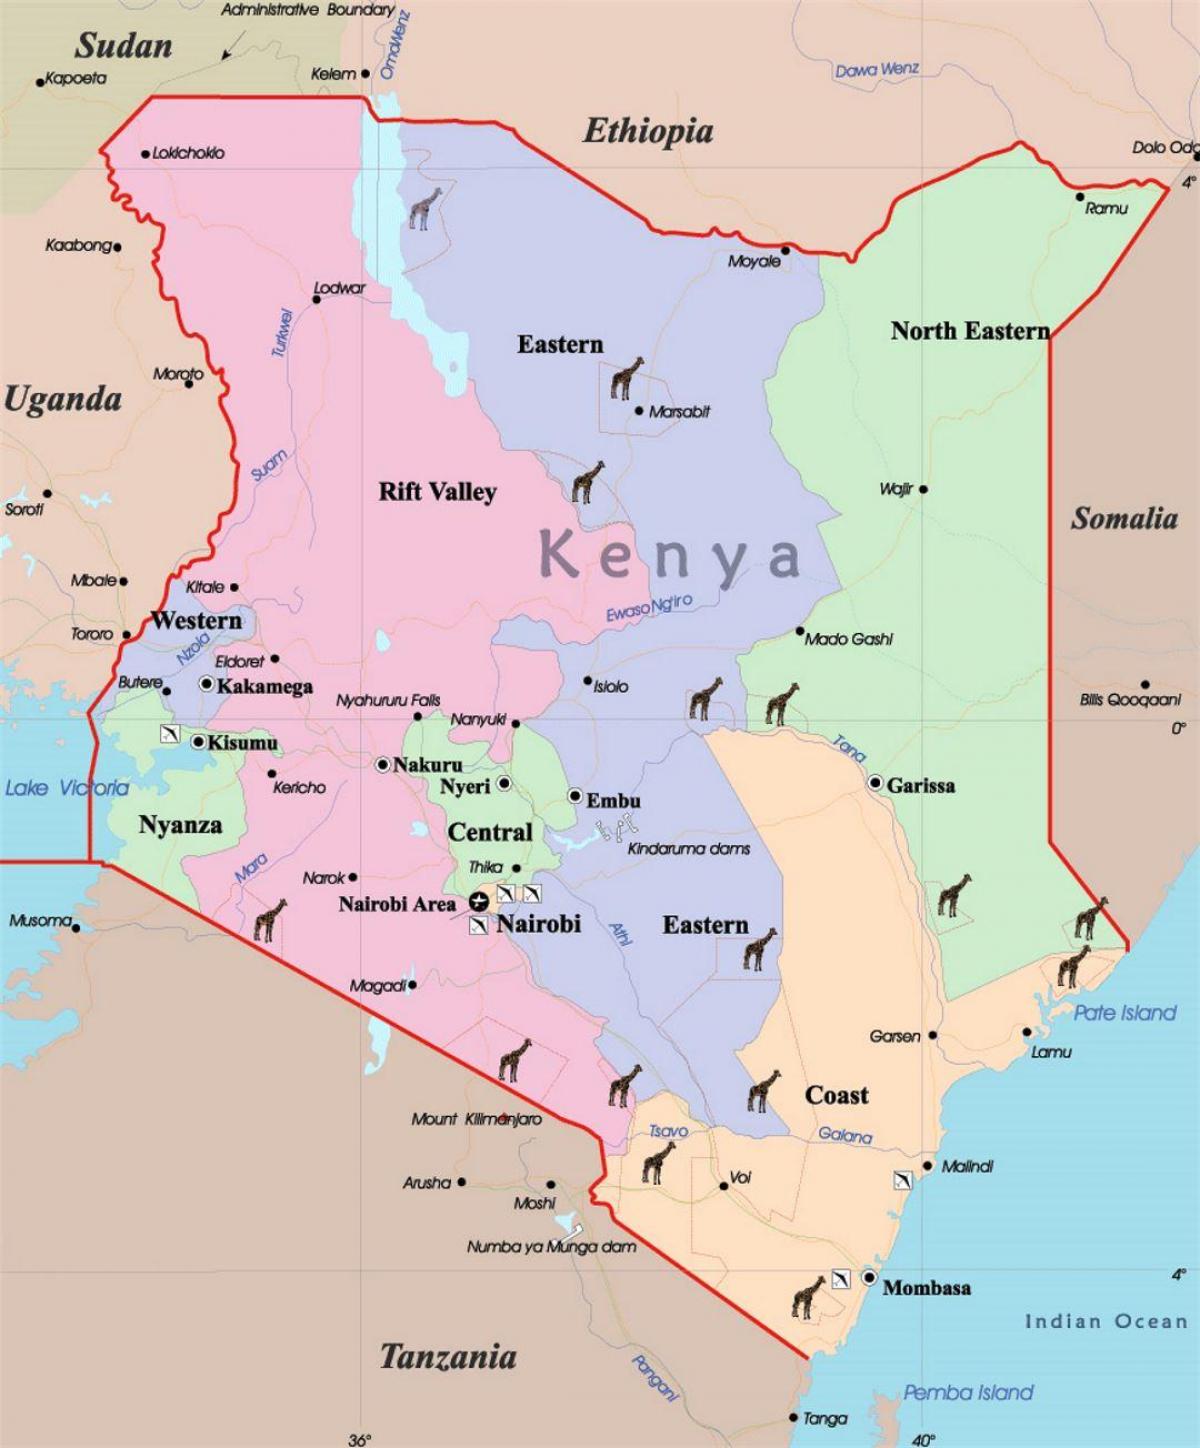 yon kat jeyografik nan Kenya